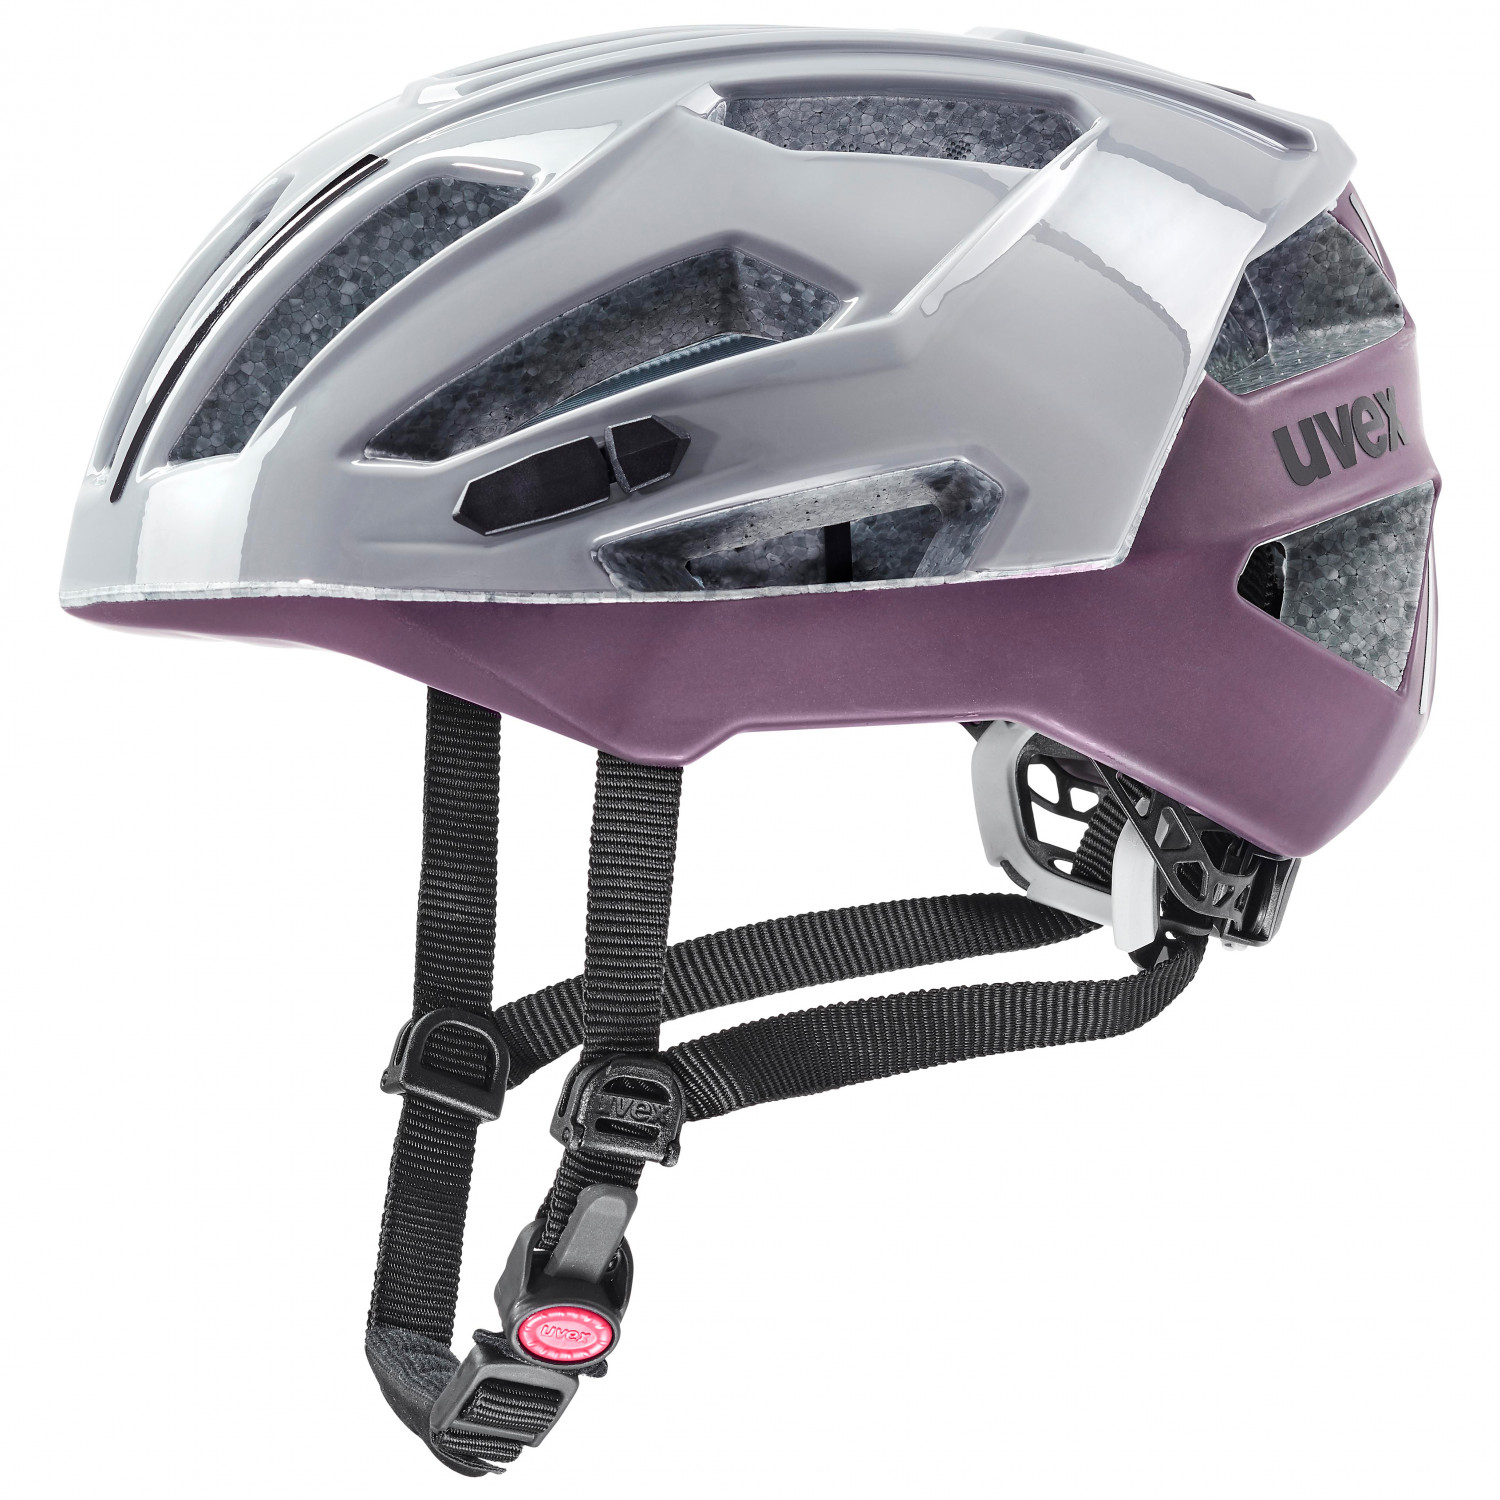 Велосипедный шлем Uvex Gravel X, цвет Rhino/Plum шлем велосипедный с вентиляционными отверстиями с фонарем 57 62 см yxe009 rockbros